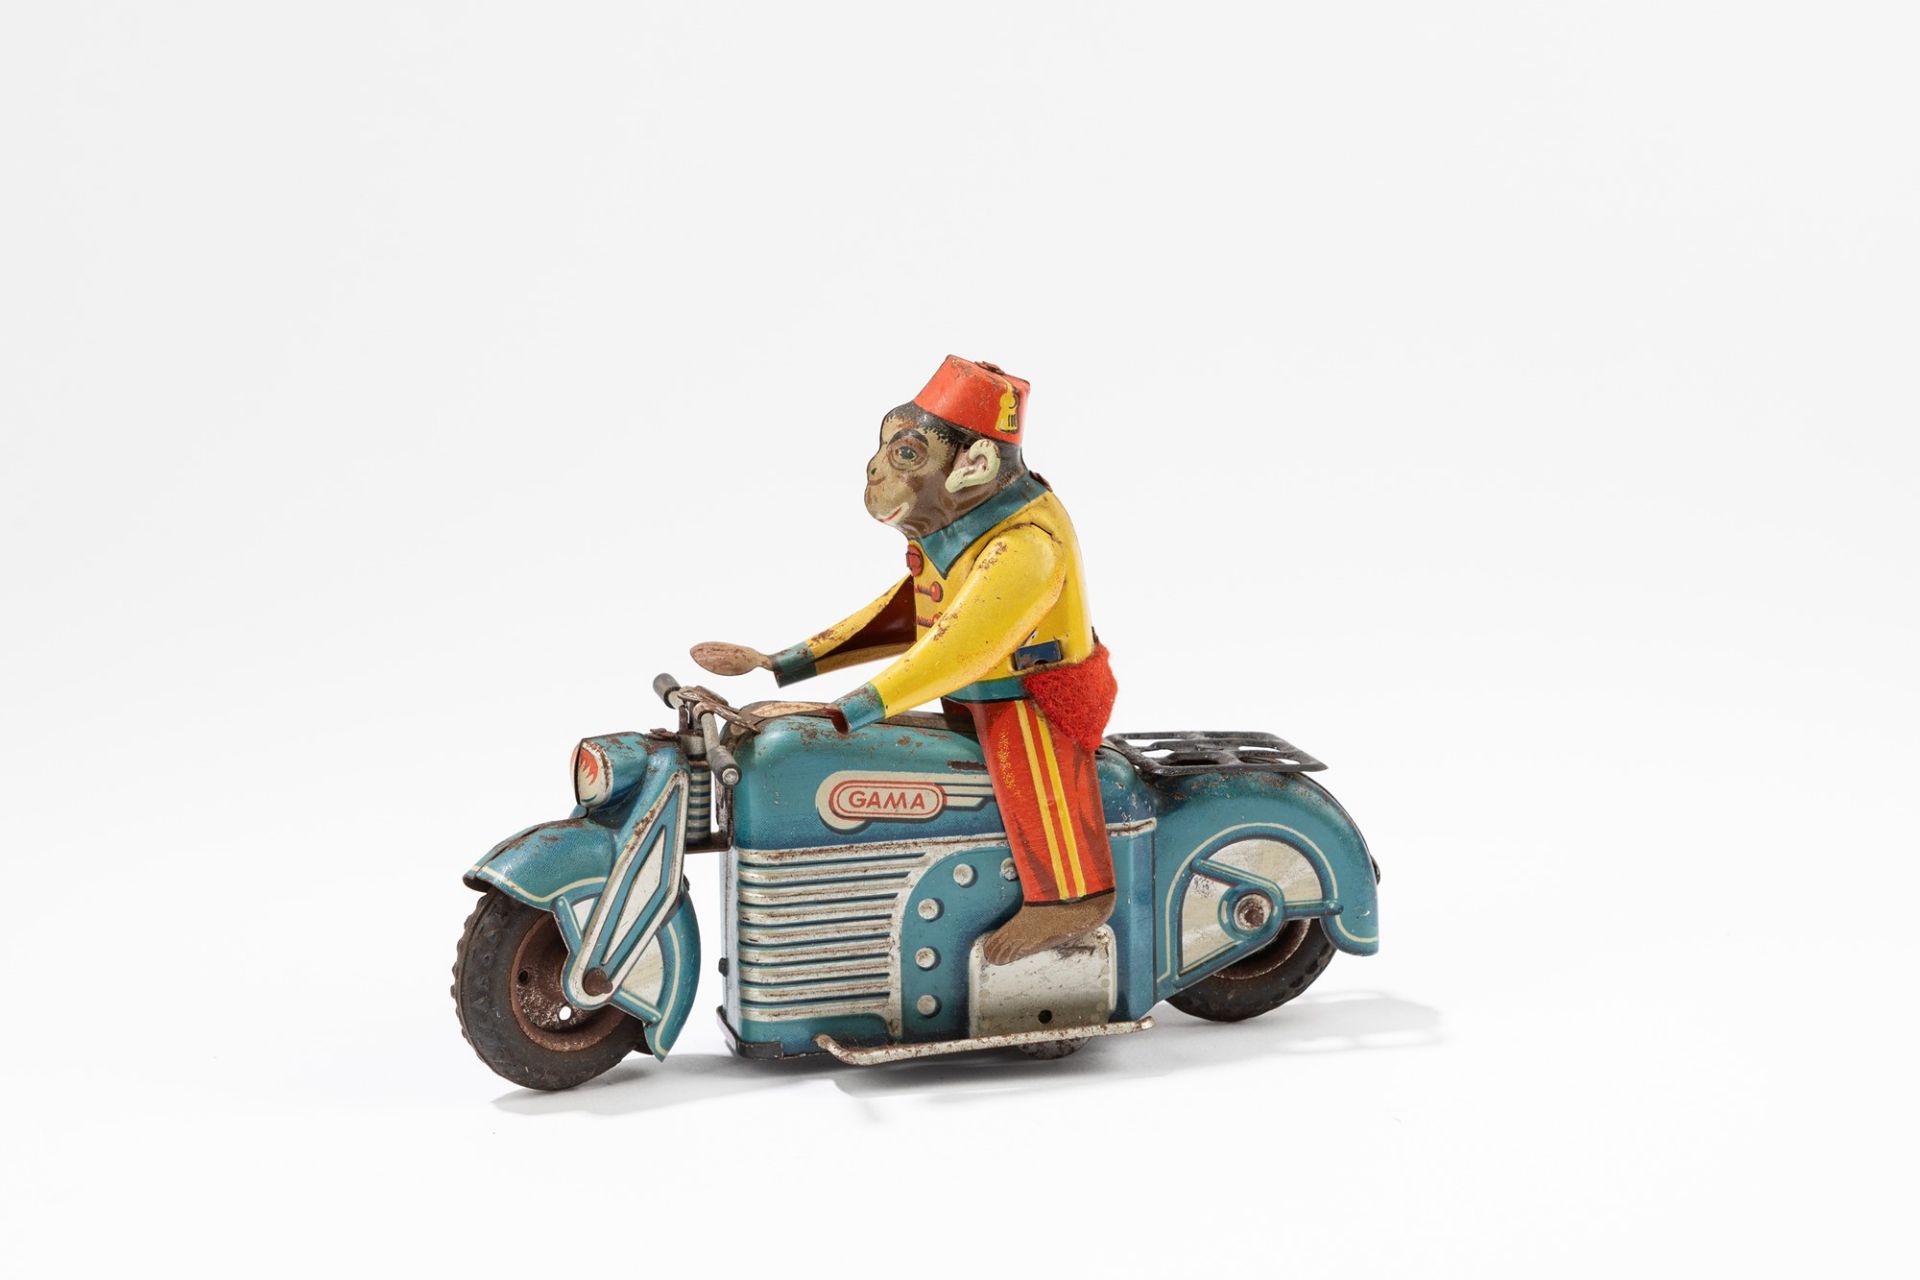 Gama - Motorcycle with monkey, 1950-1960